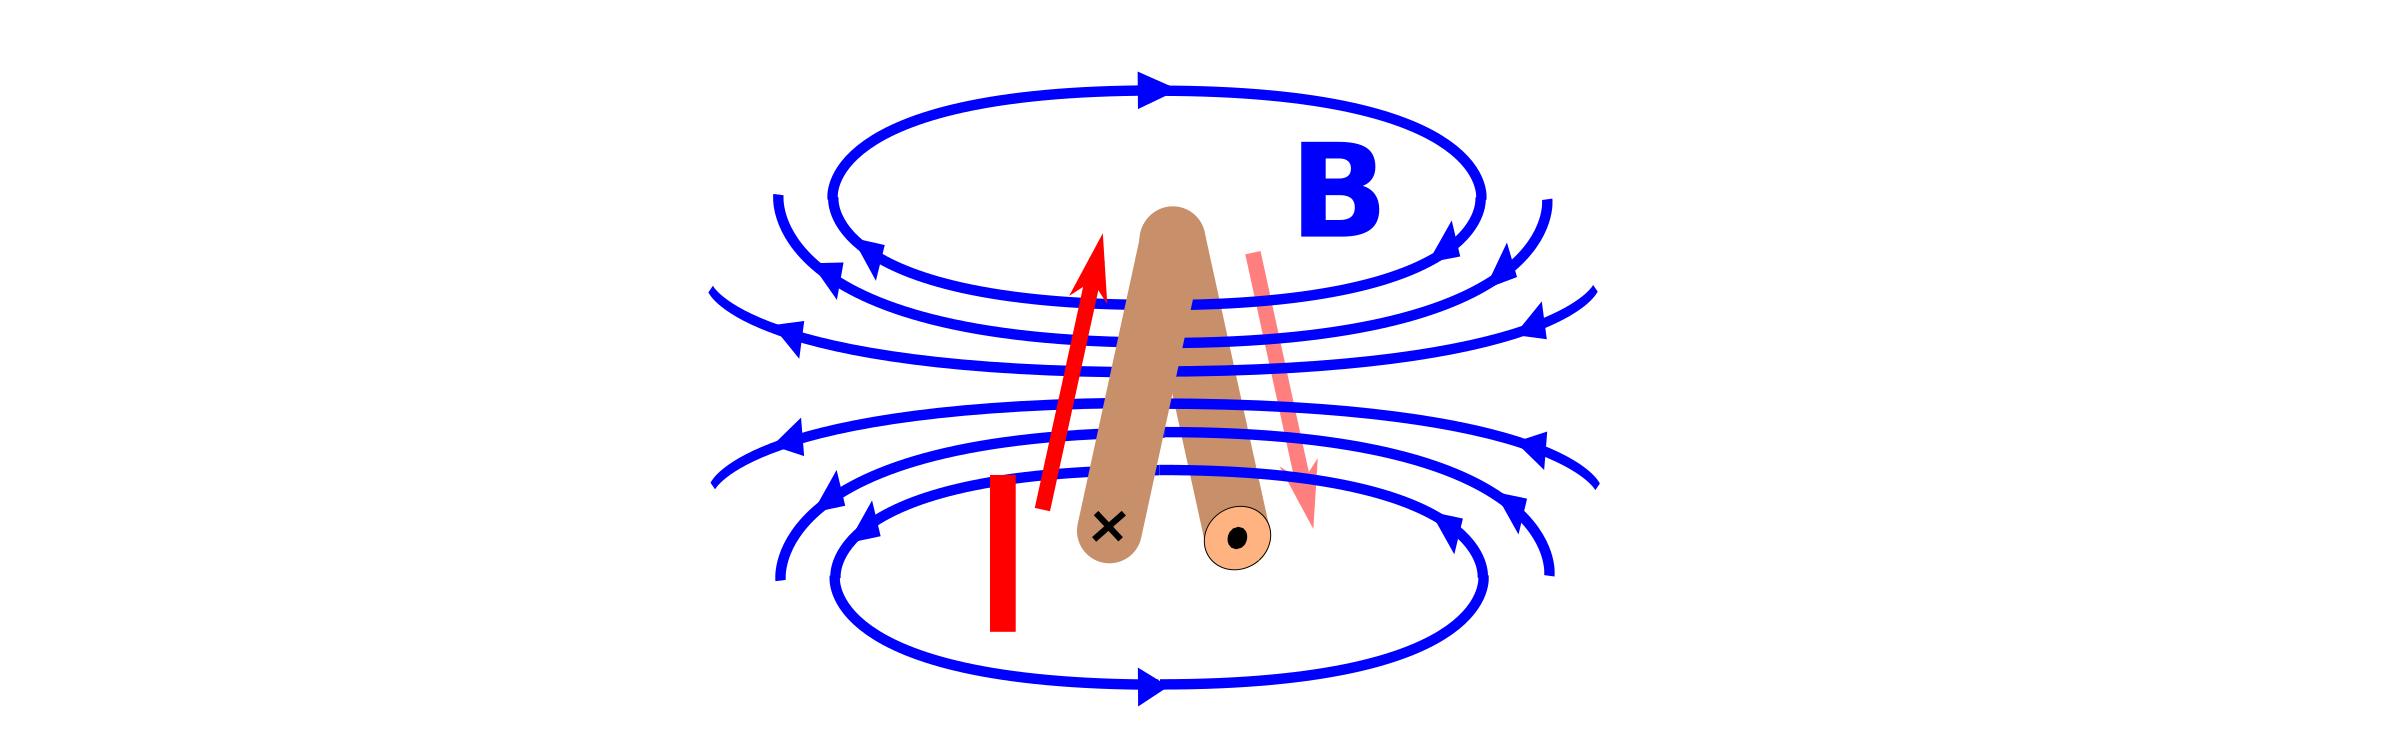 Magnetfeld einer Spule (1 Windung) png